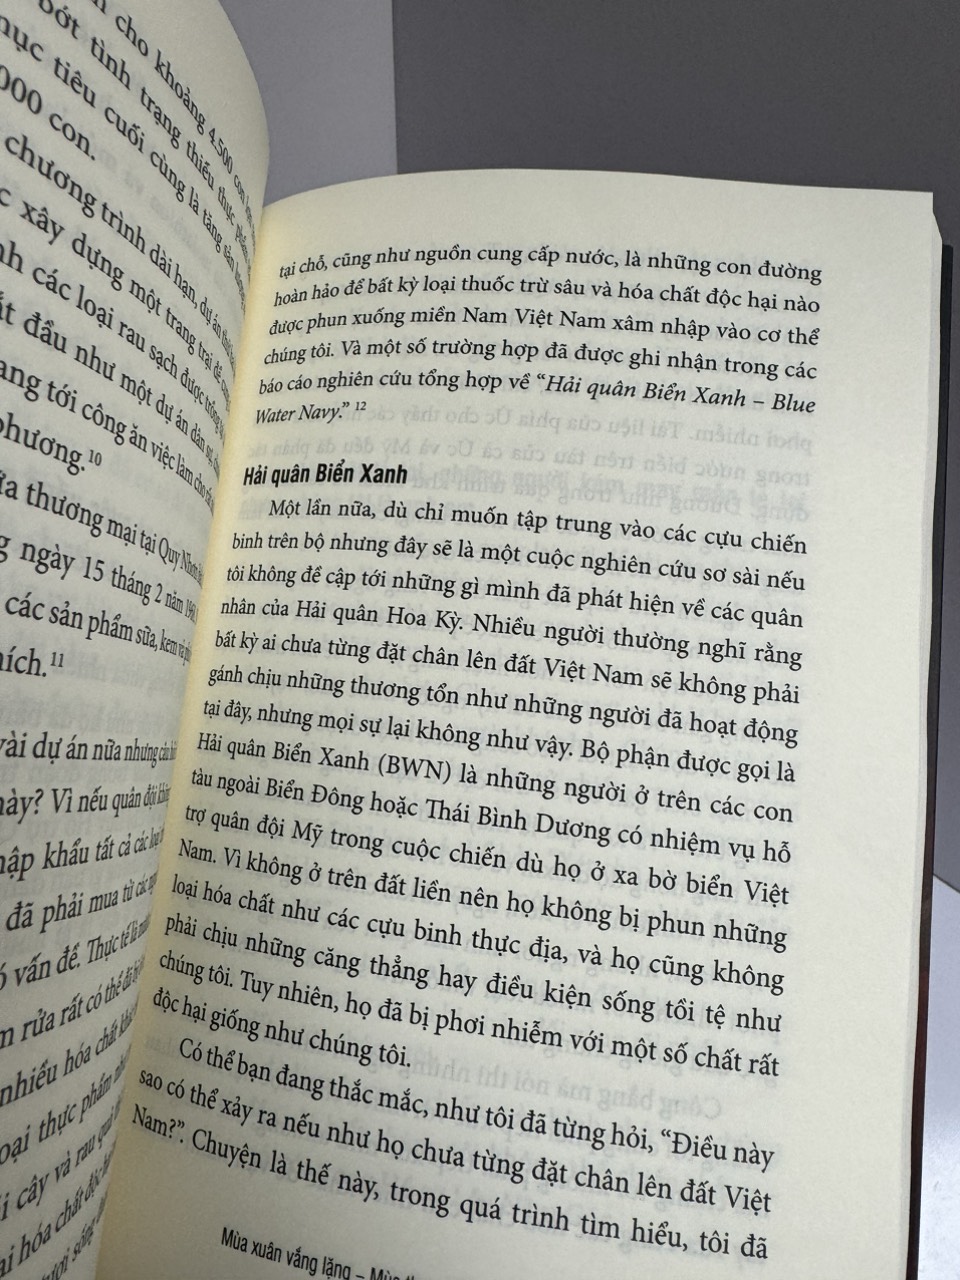 MÙA XUÂN VẮNG LẶNG - MÙA THU CHẾT CHÓC CỦA CHIẾN TRANH VIỆT NAM (Hành trình điều tra về chất độc da cam của một cựu binh Mỹ) - Patrick Hogan - Nguyễn Văn Minh dịch - Phương Nam Books